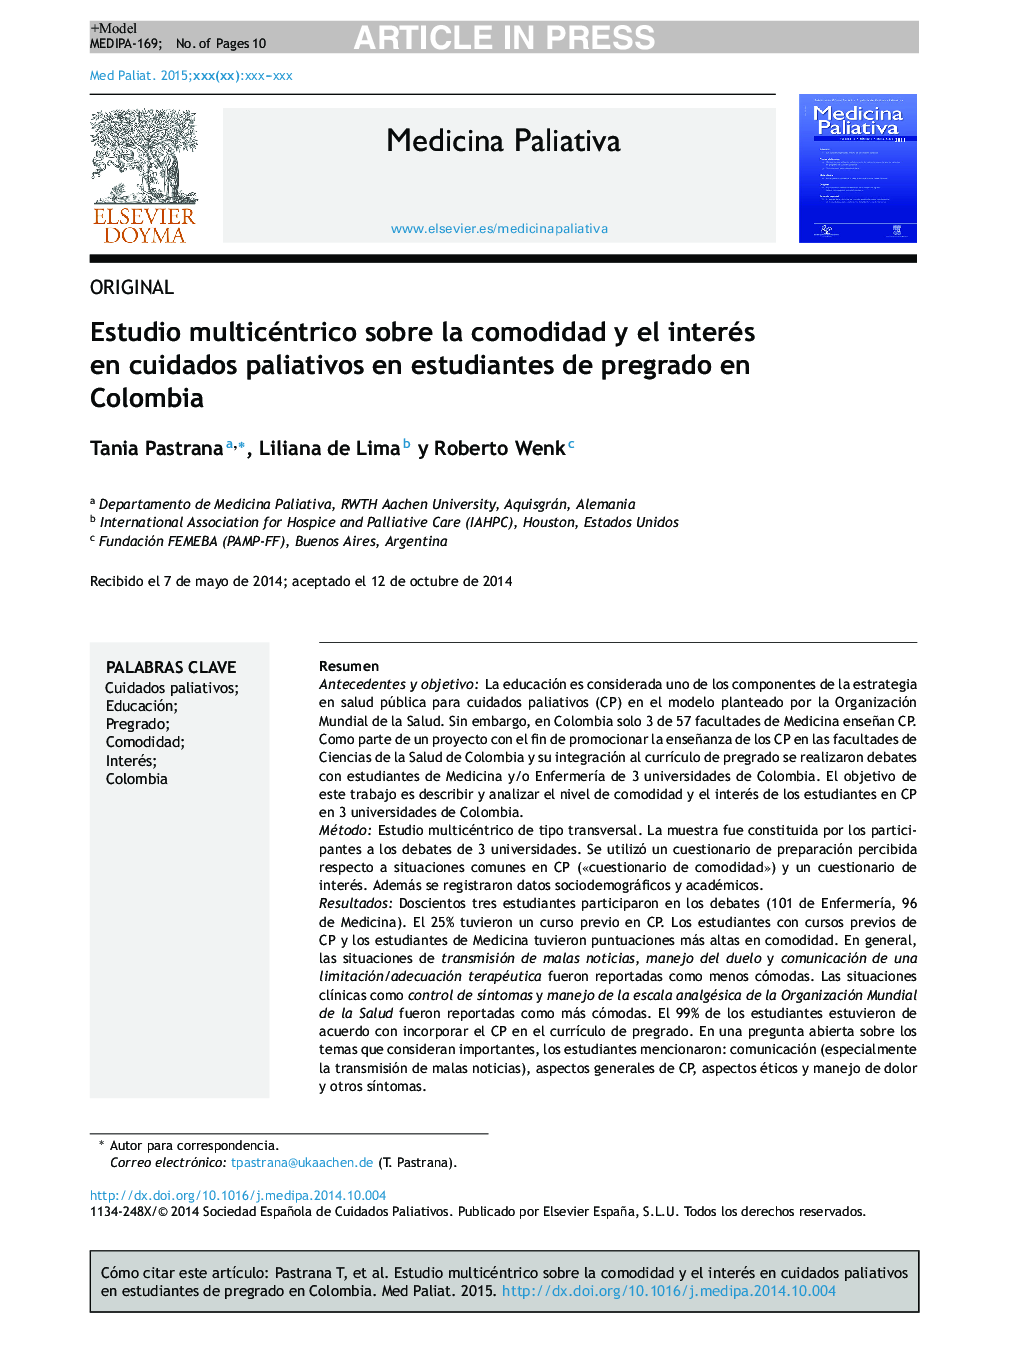 Estudio multicéntrico sobre la comodidad y el interés en cuidados paliativos en estudiantes de pregrado en Colombia